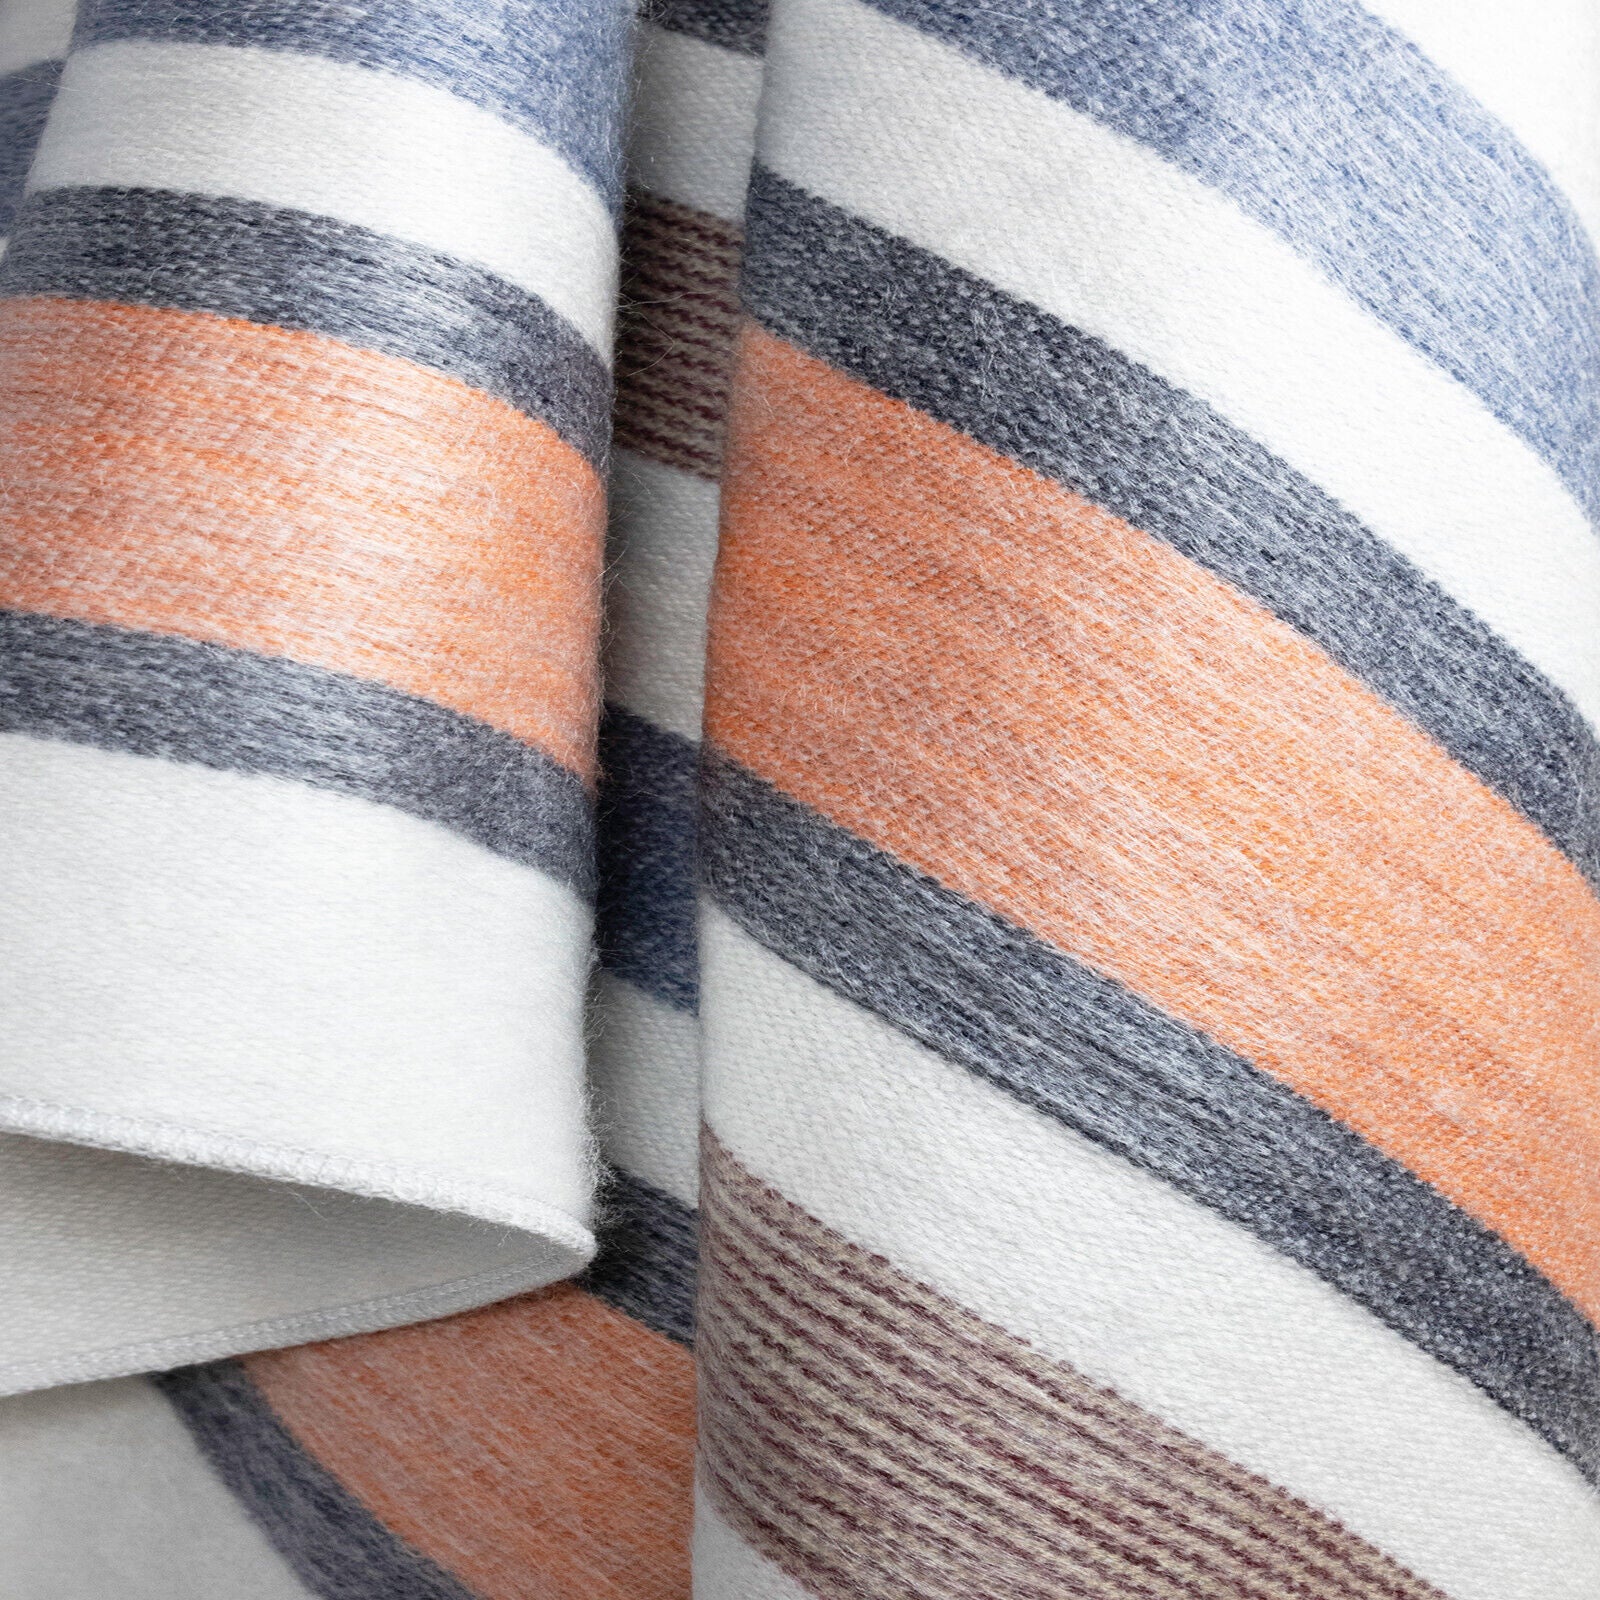 Sopoto - Baby Alpaca Wool Throw Blanket / Sofa Cover - Queen 95 x 67 in - orange pastel colors